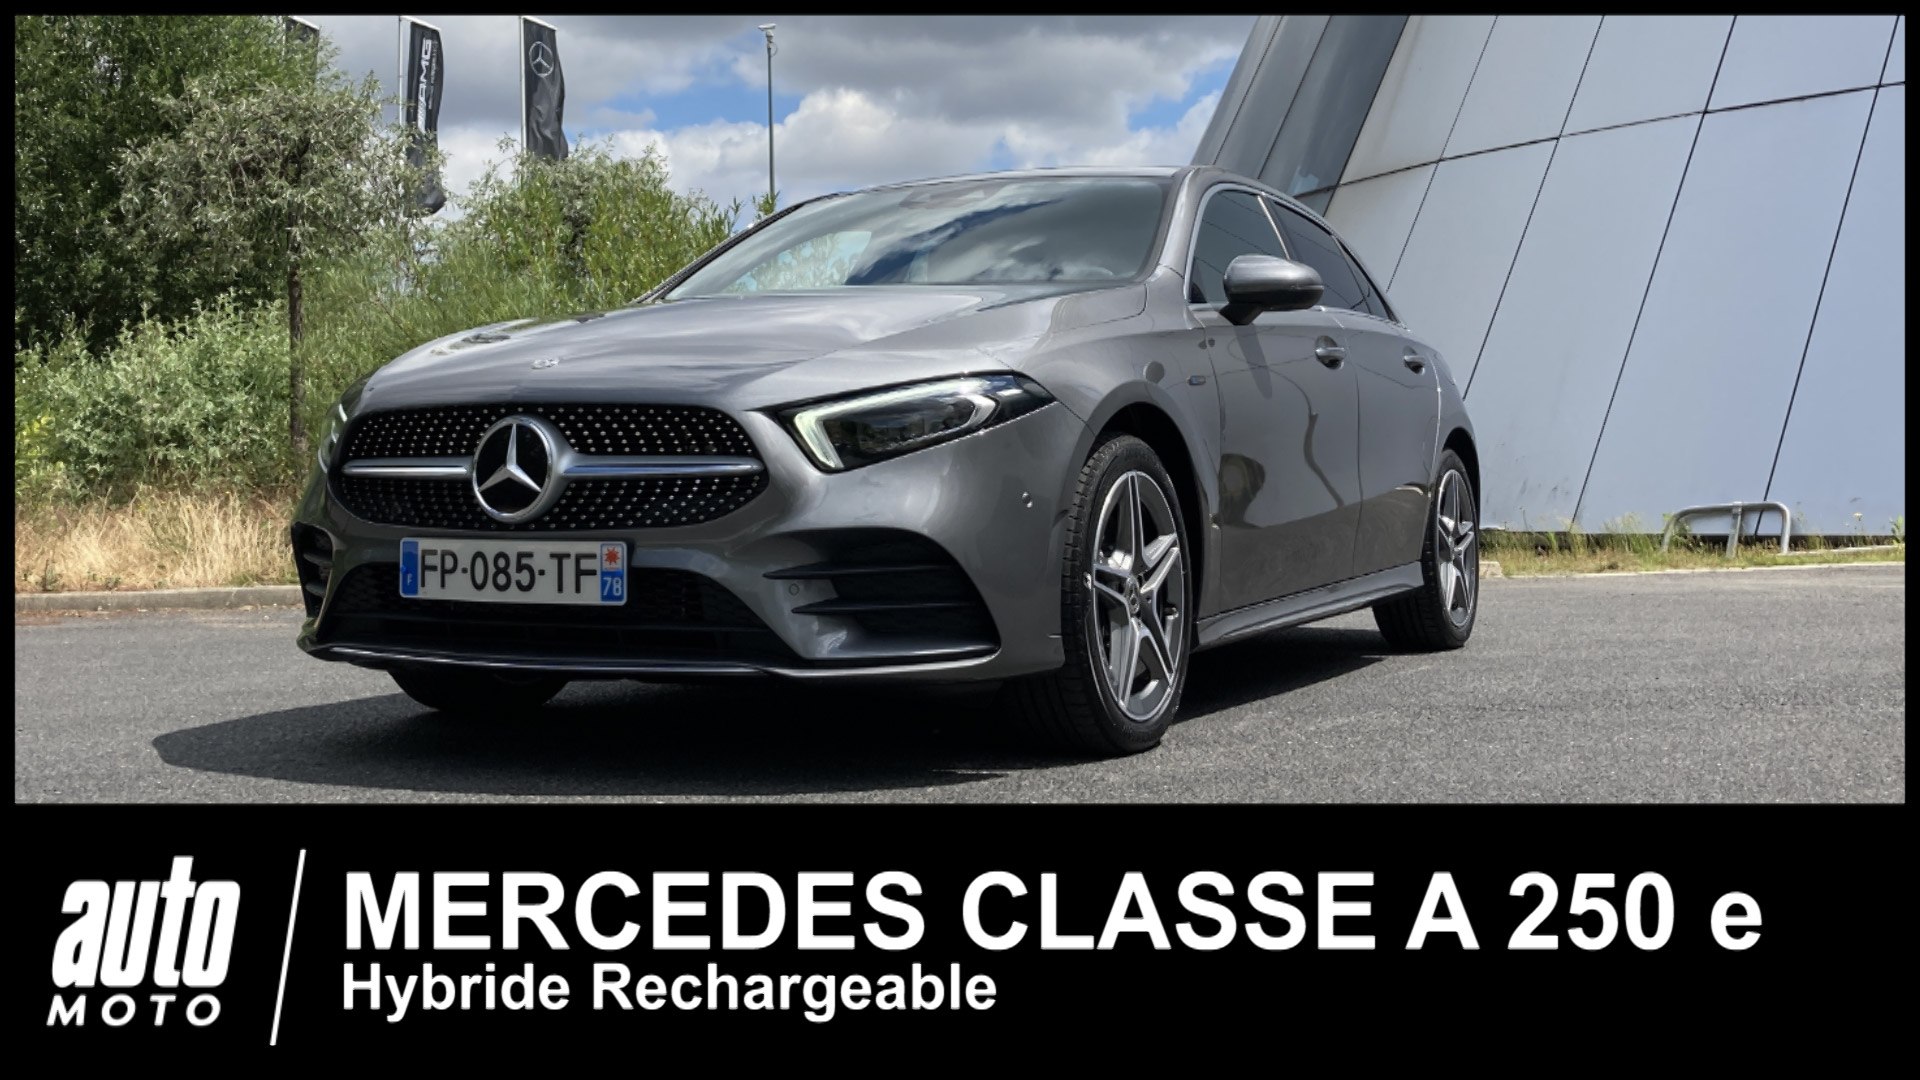 Essai Mercedes Classe A 180d Progressive Line 2018 - Vidéo Dailymotion